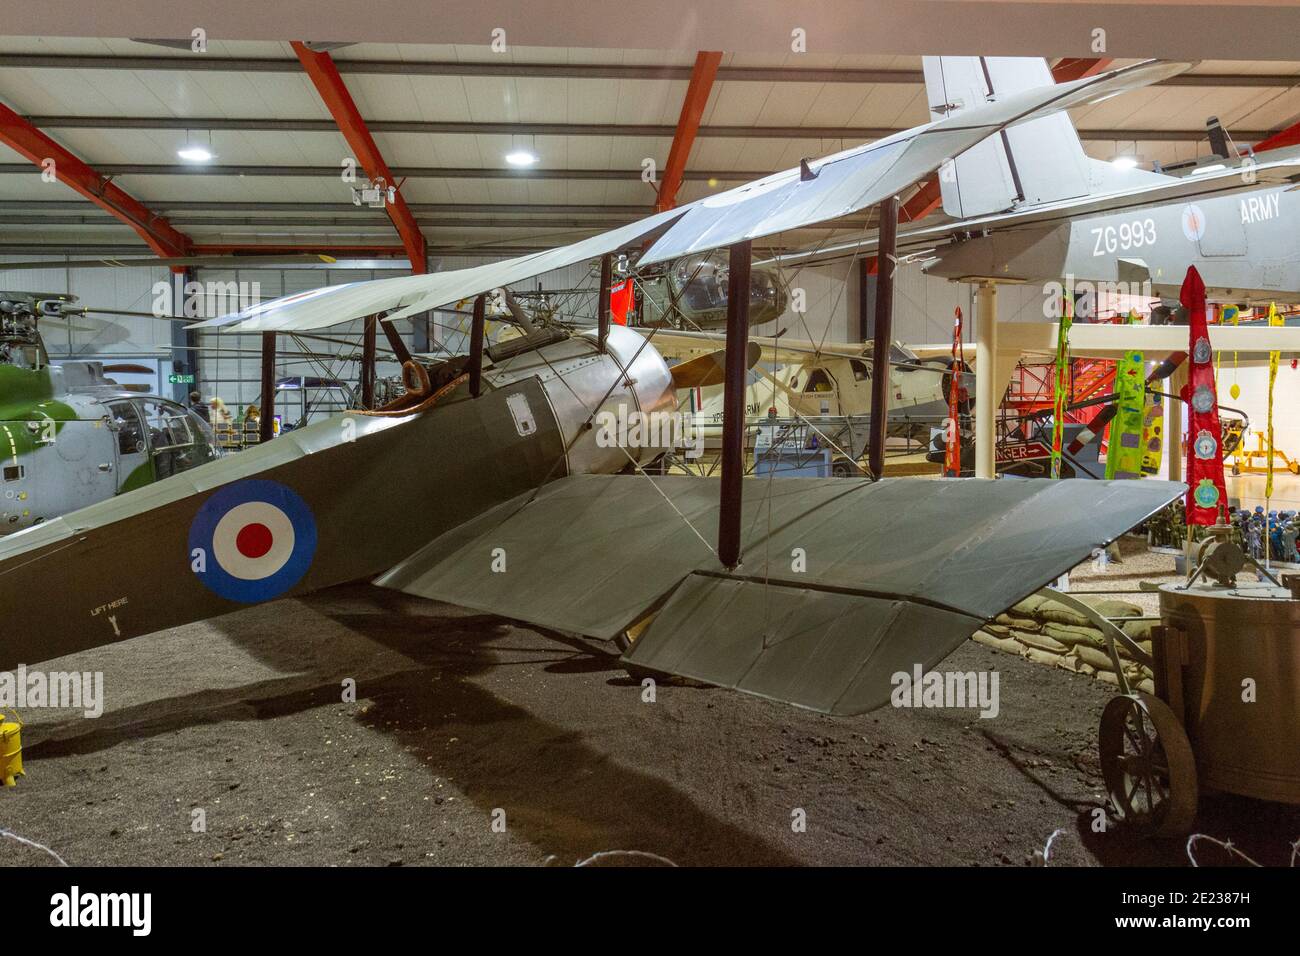 Un avión de scout Sopowith Pup en exhibición en el Museo del Ejército de vuelo, un Museo de Aviación Militar en Stockbridge, Hampshire, Reino Unido. Foto de stock